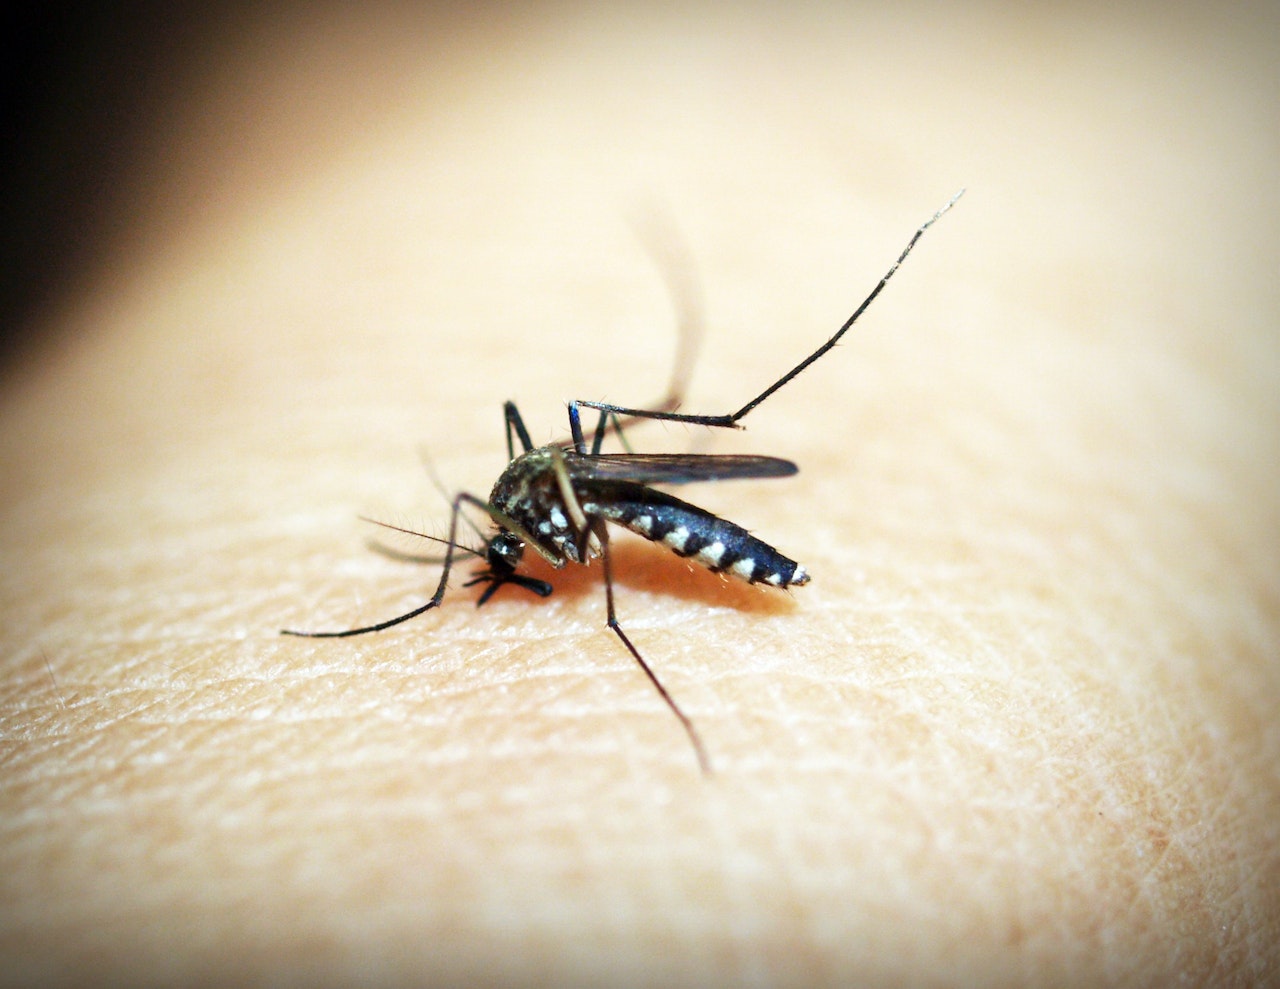 El virus del Nilo Occidental se transmite a las personas principalmente por la picadura de mosquitos infectados. Foto: icon0.com/Pexels.